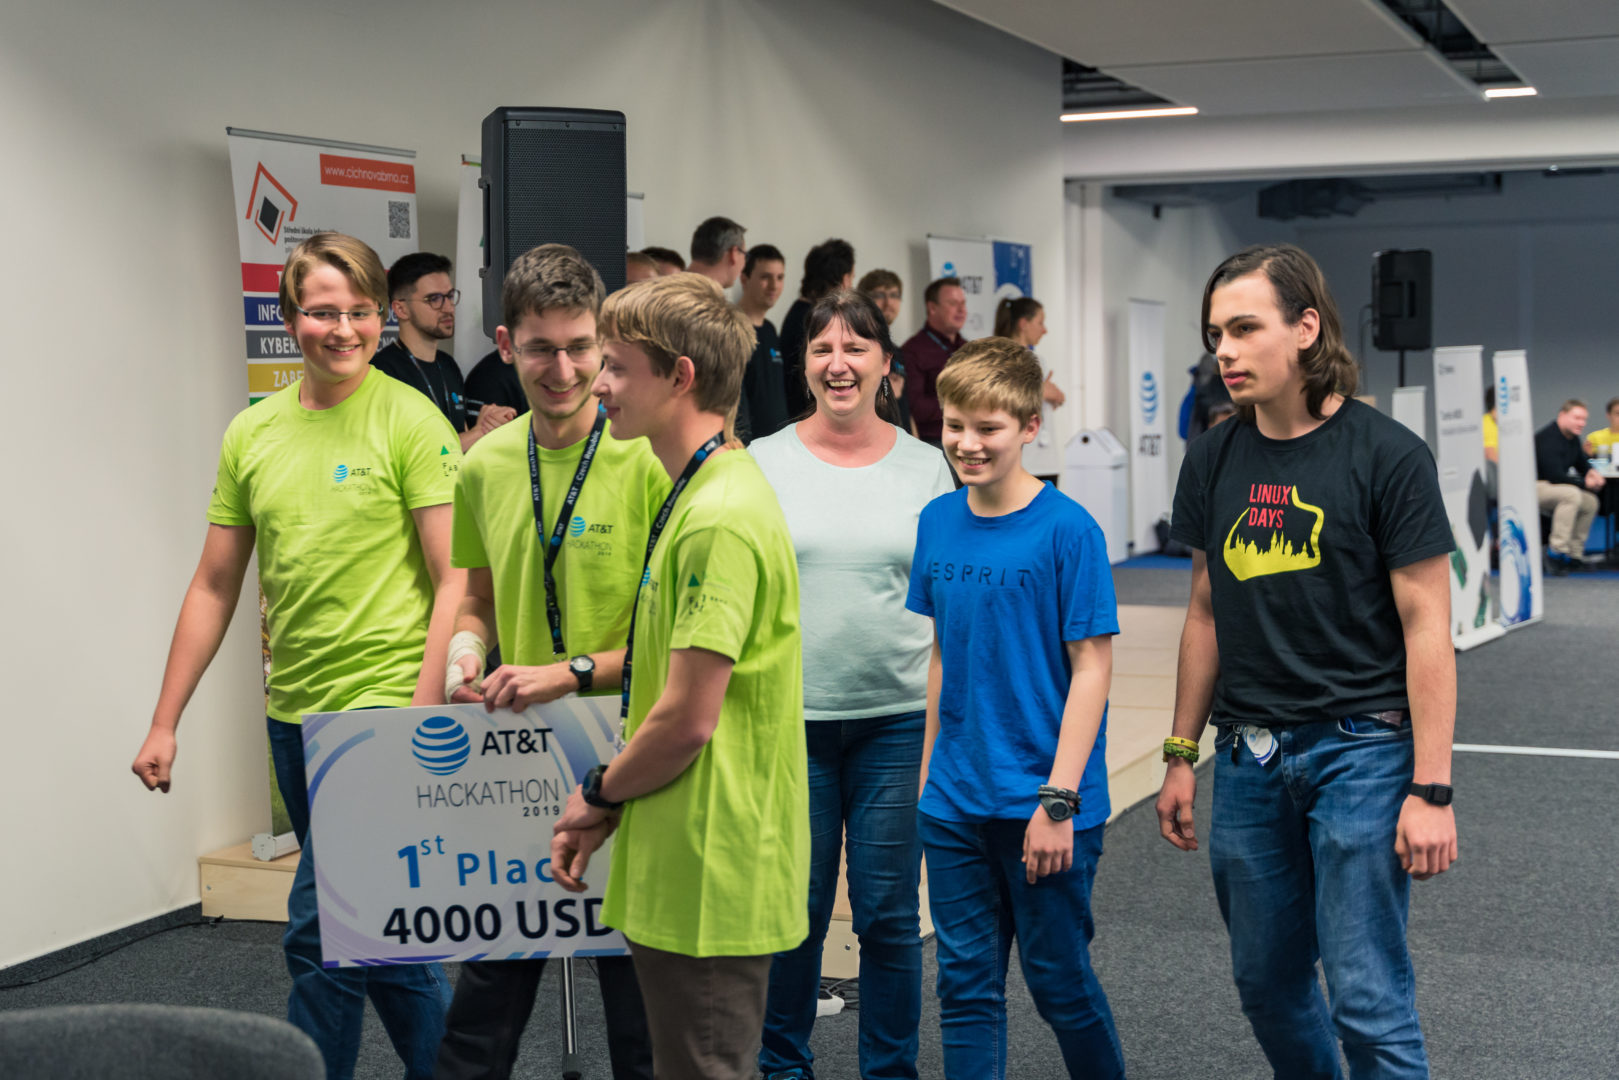 AT&T Hackathon 2019, Brno Czech Republic, 1st place "Pátek" team